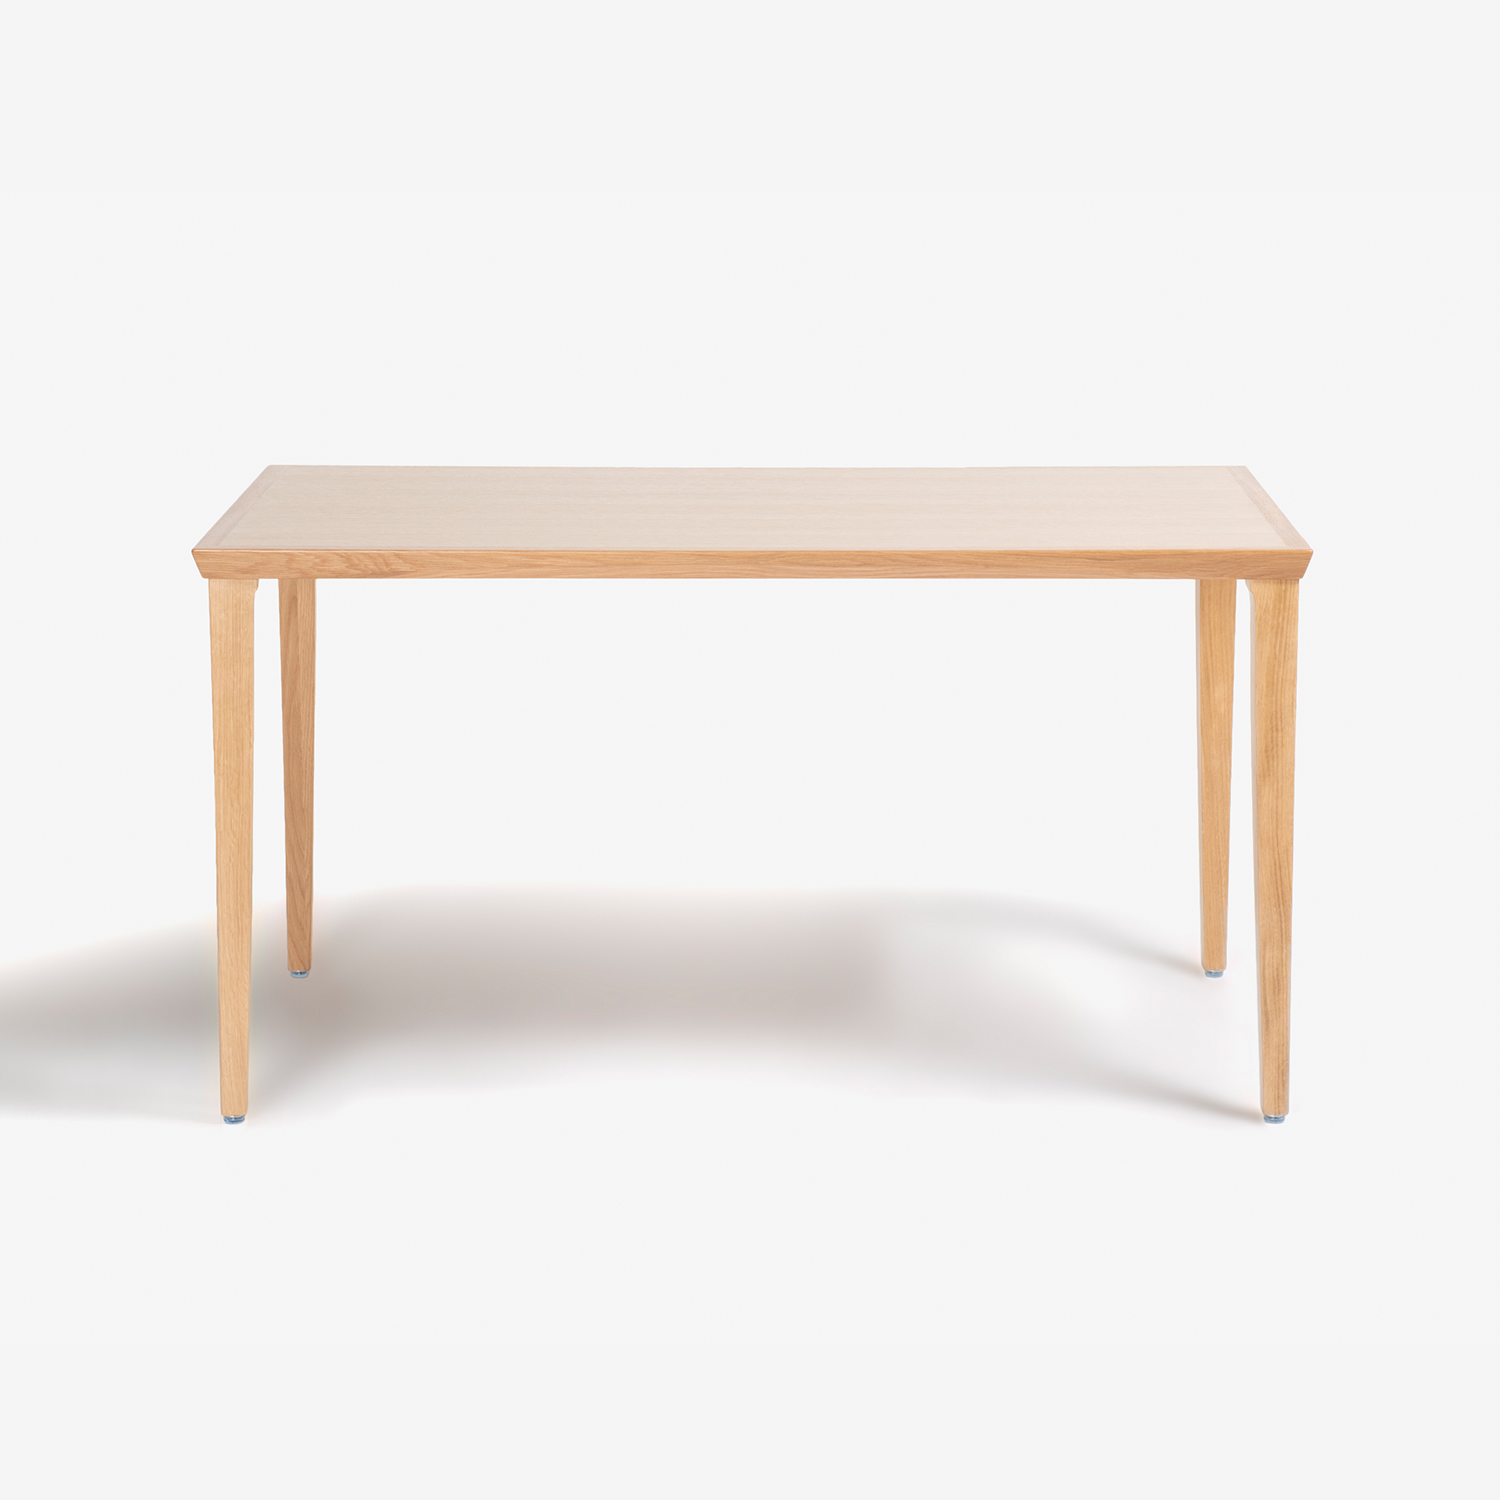 秋田木工 ダイニングテーブル「N-T005」ナラ材 ホワイトオーク色 全3サイズ | 大塚家具 ONLINE SHOP